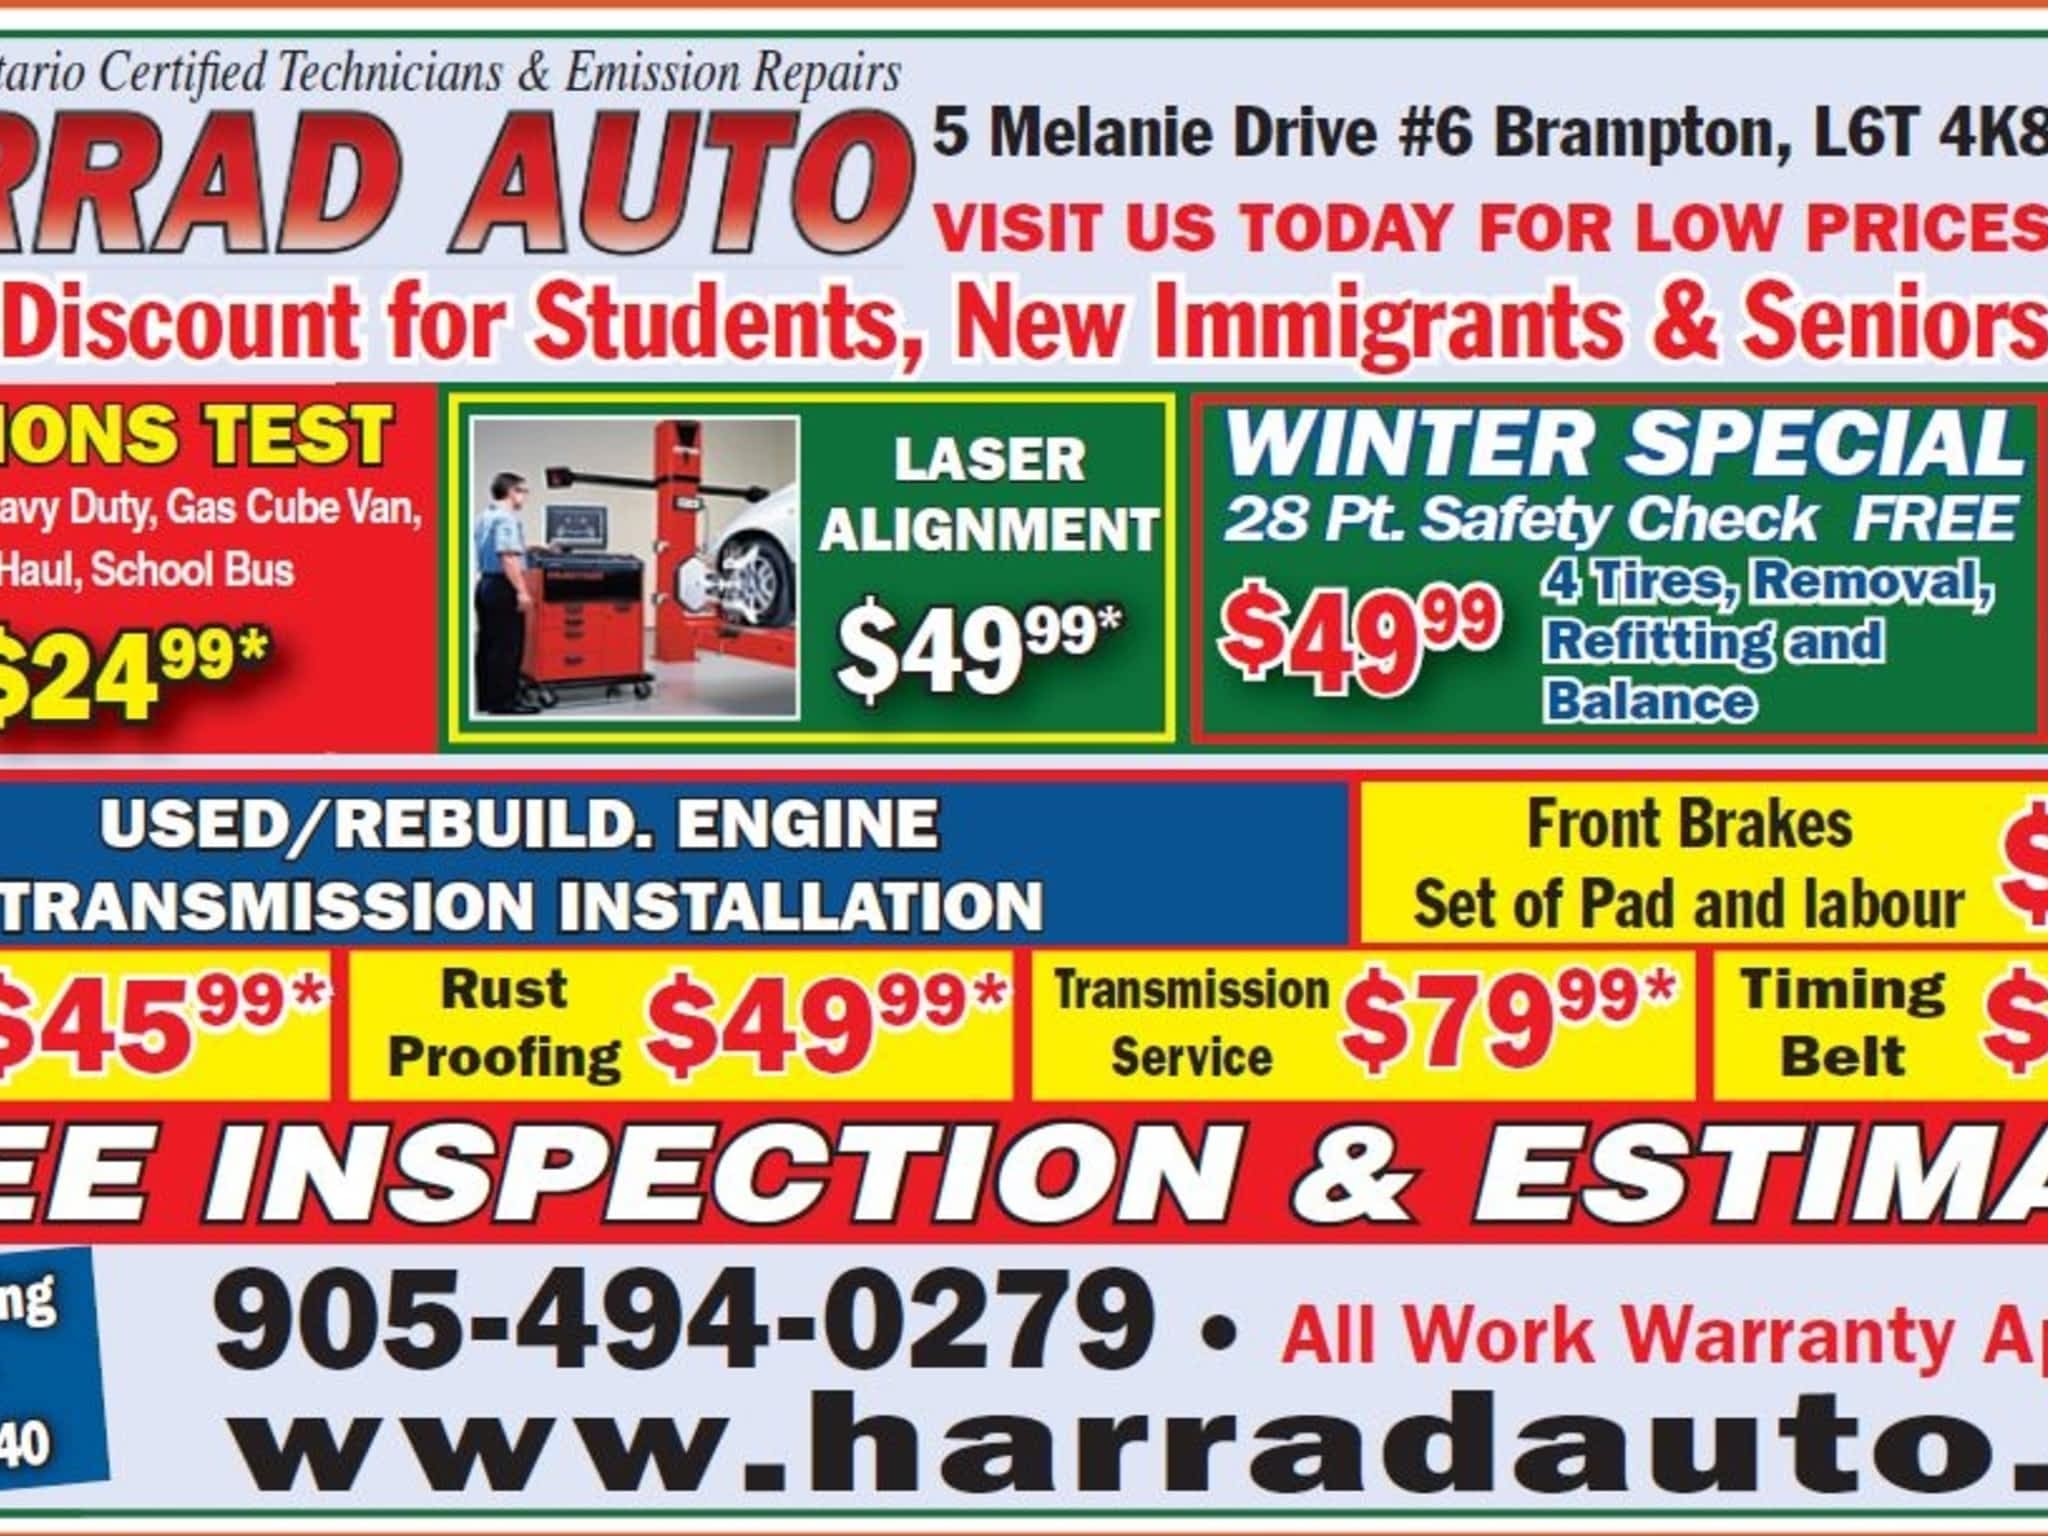 photo Harrad Auto Services